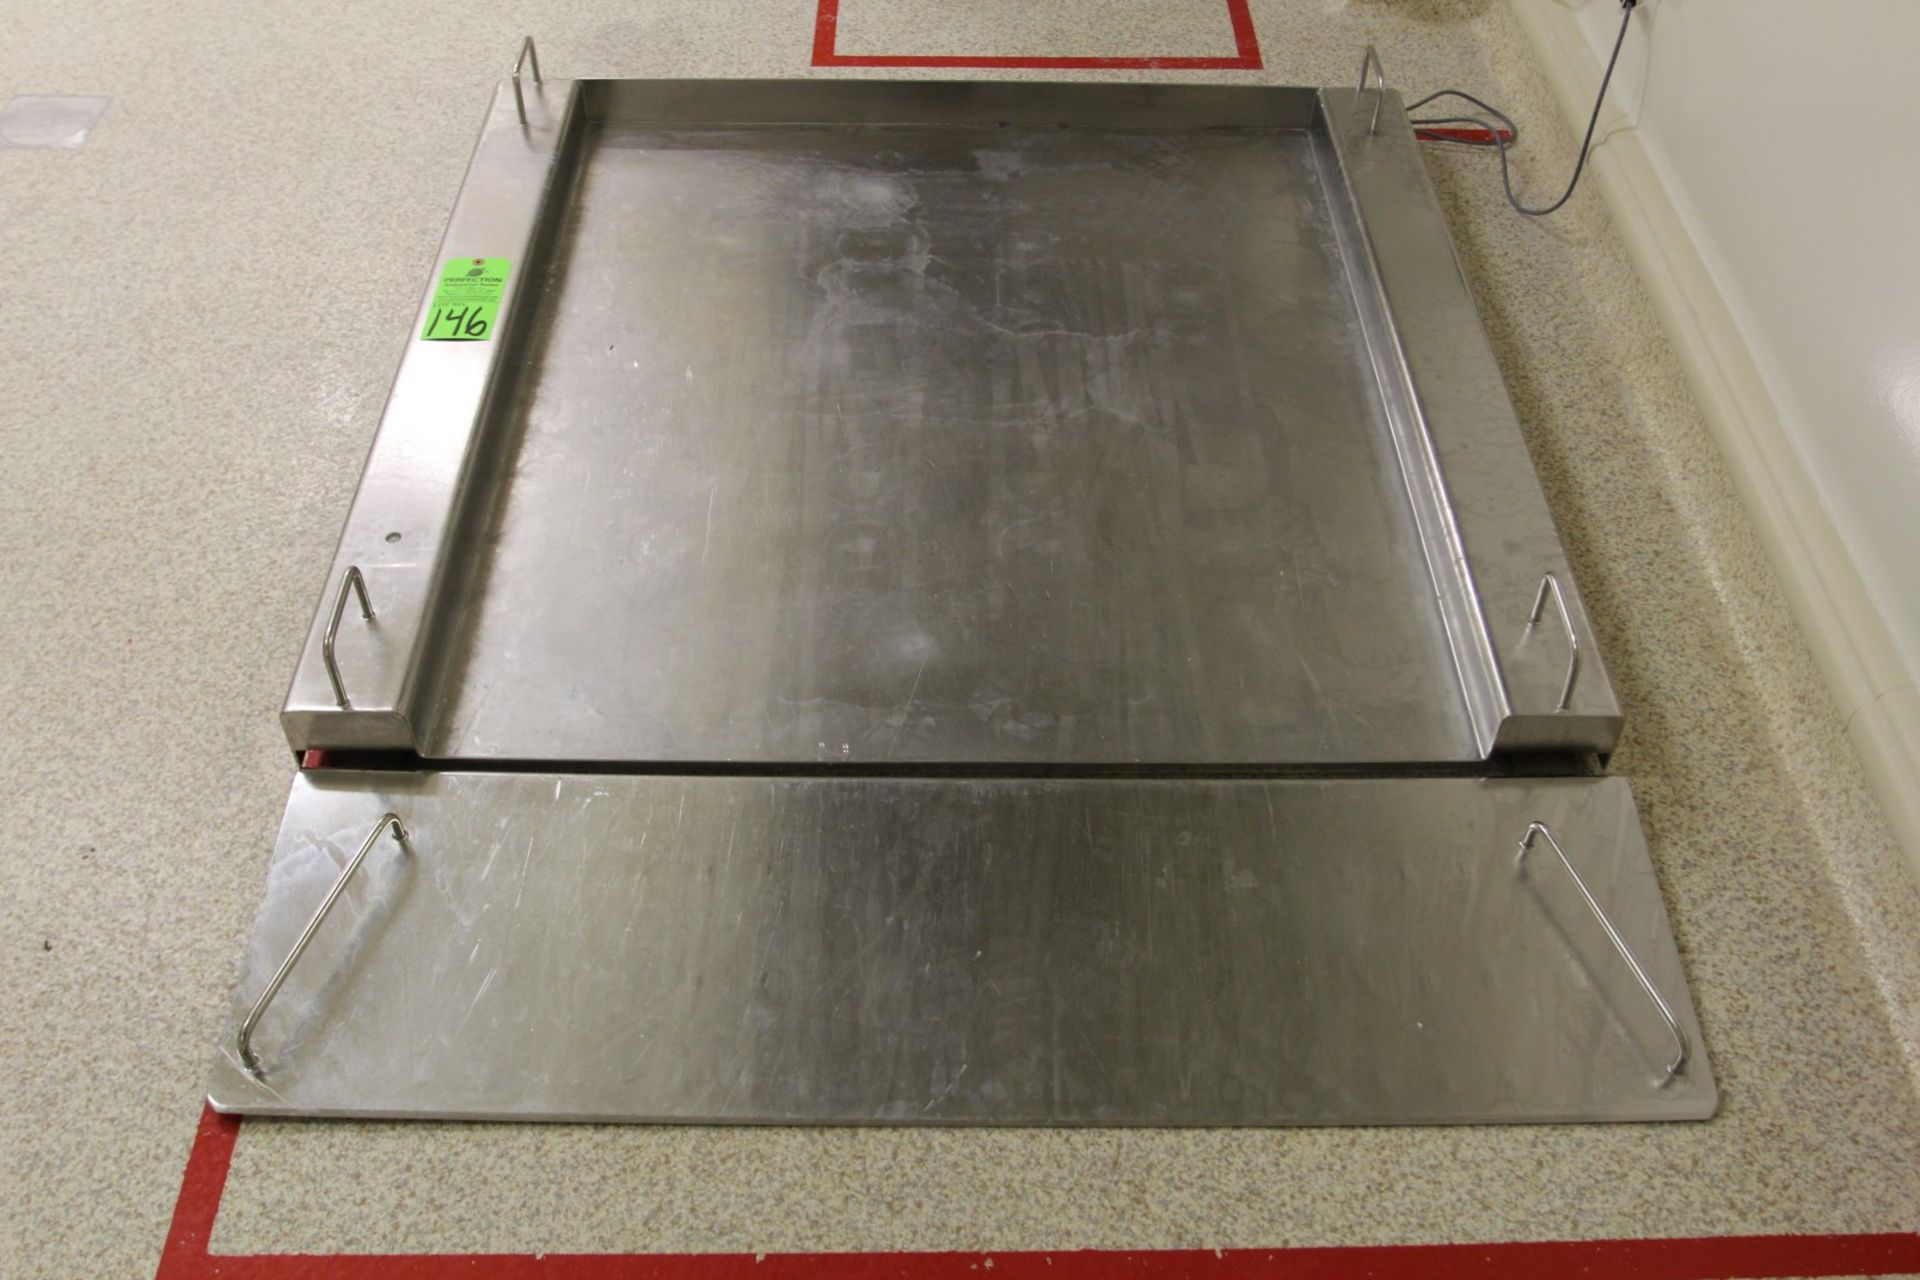 1500 kg Sartorius IFS4-1500-NL Stainless Steel Floor Scale, s/n 17738324, 115cm x 100cm, Sartorius - Image 2 of 7